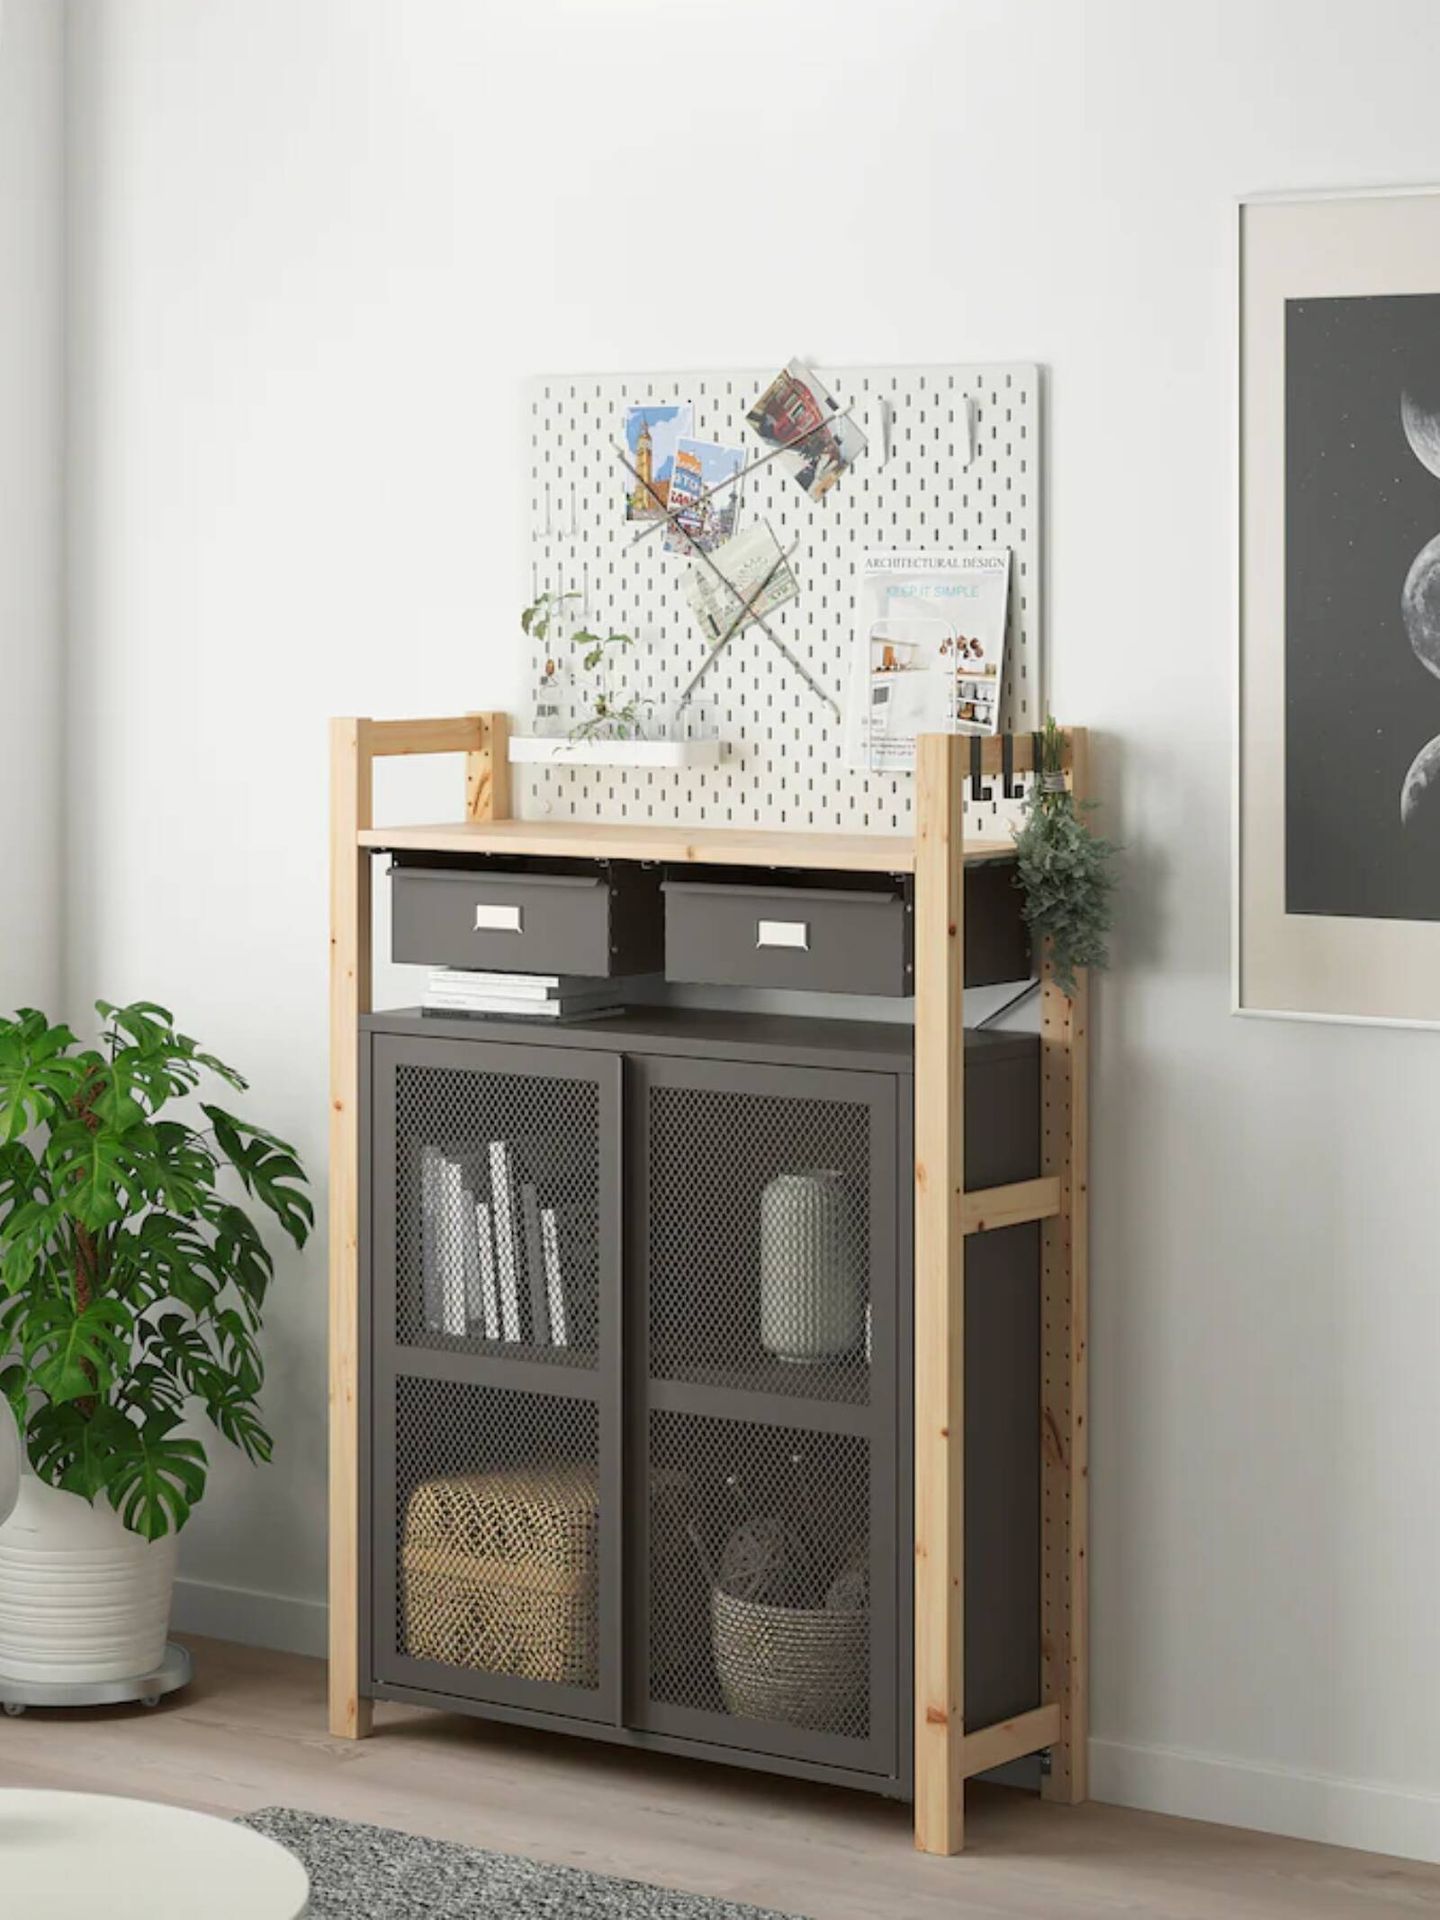 Así es el práctico mueble de Ikea ideal para toda la casa. (Cortesía)